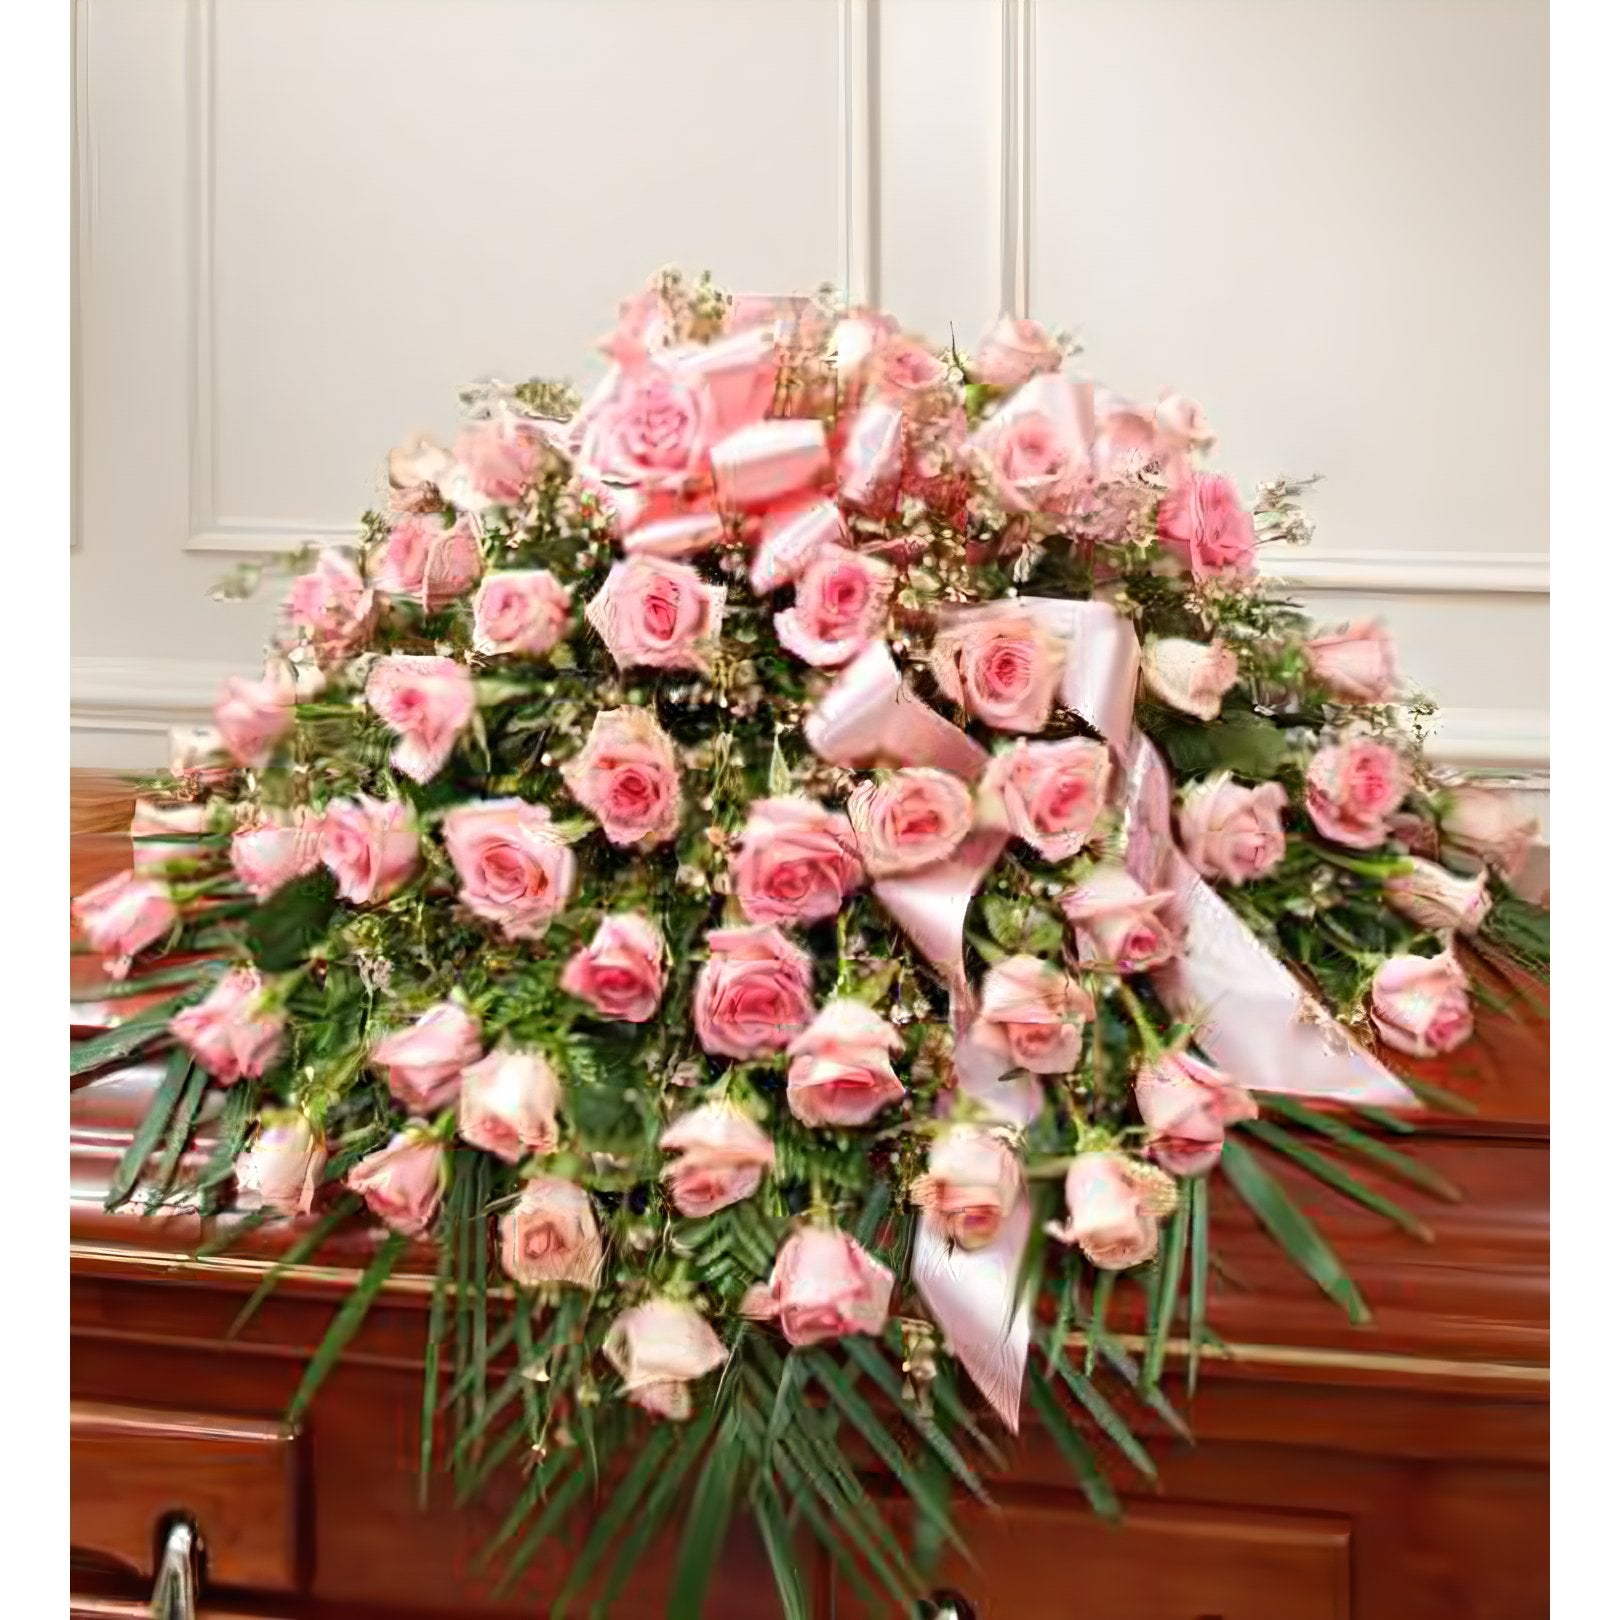 Cherished Memories Rose Half Casket Cover - Pink - Floral Arrangement - Flower Delivery Brooklyn